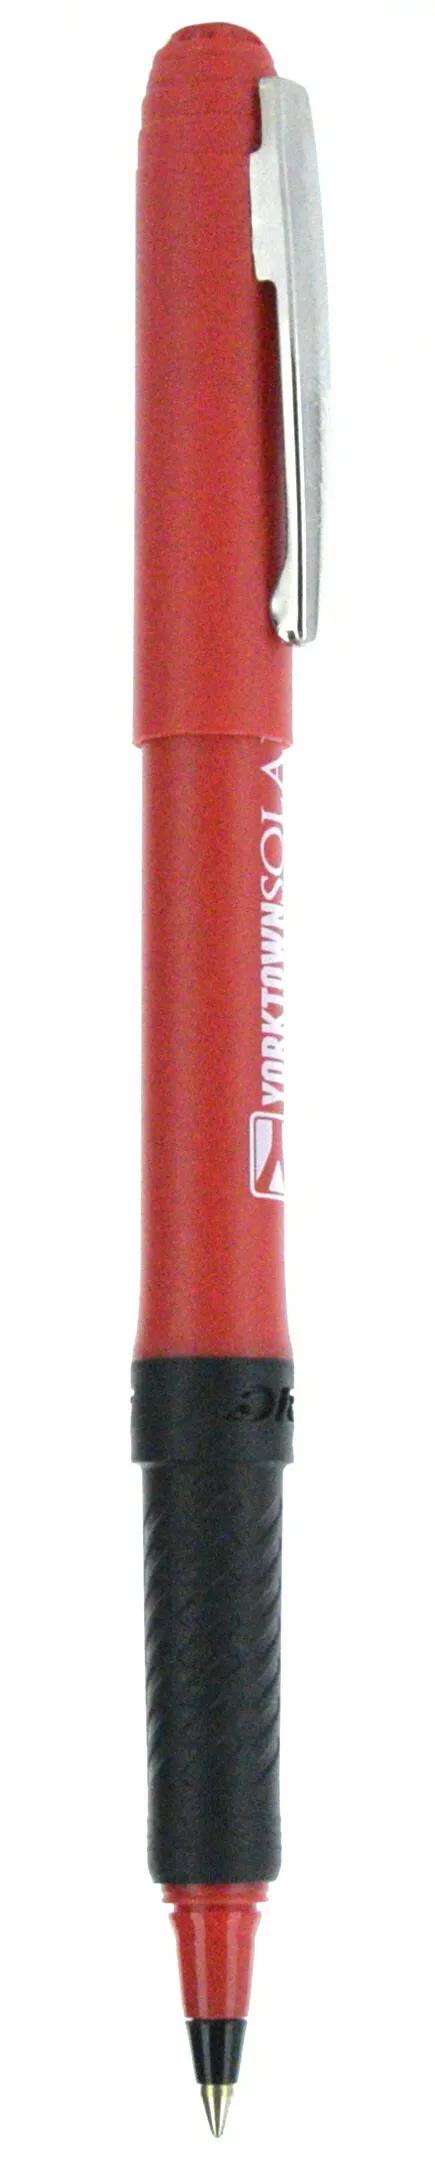 BIC® Grip Roller Pen 128 of 147